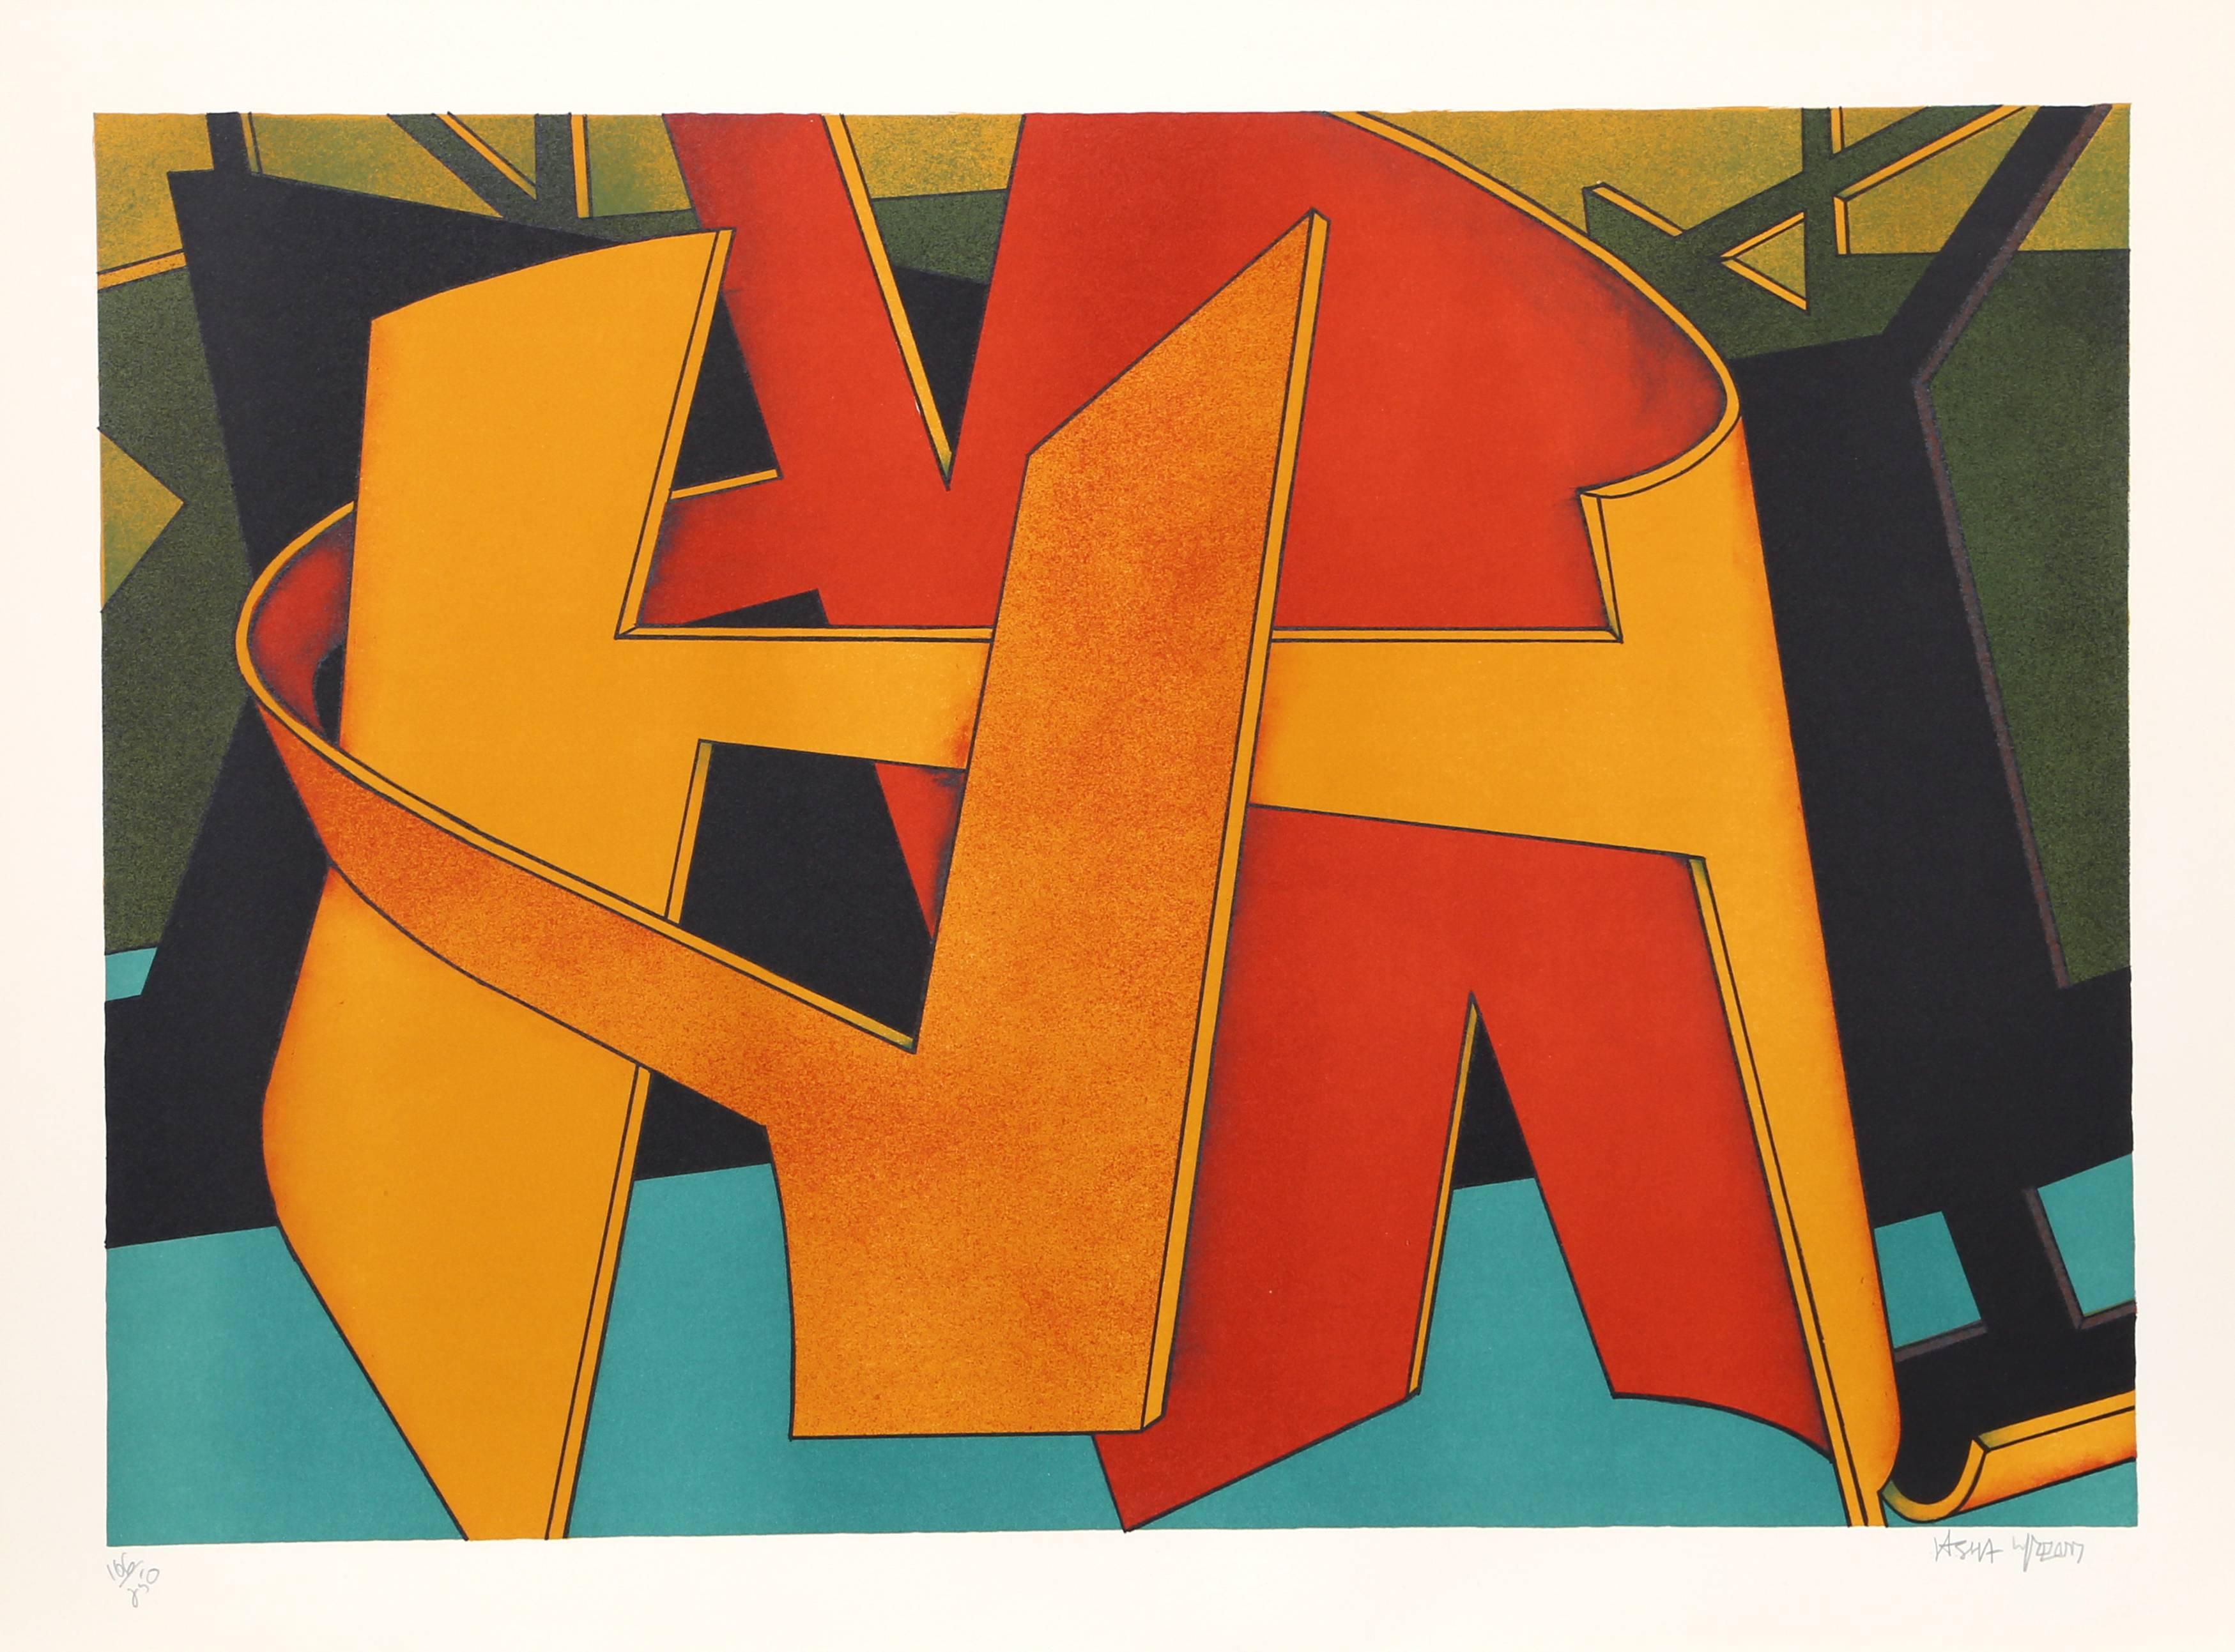 Artistics : Jasha Green
Titre : Sans titre 22
Année : vers 1976
Médium : Lithographie, signée et numérotée au crayon
Edition : 250
Taille : 25  x 34 in. (63.5  x 86,36 cm)